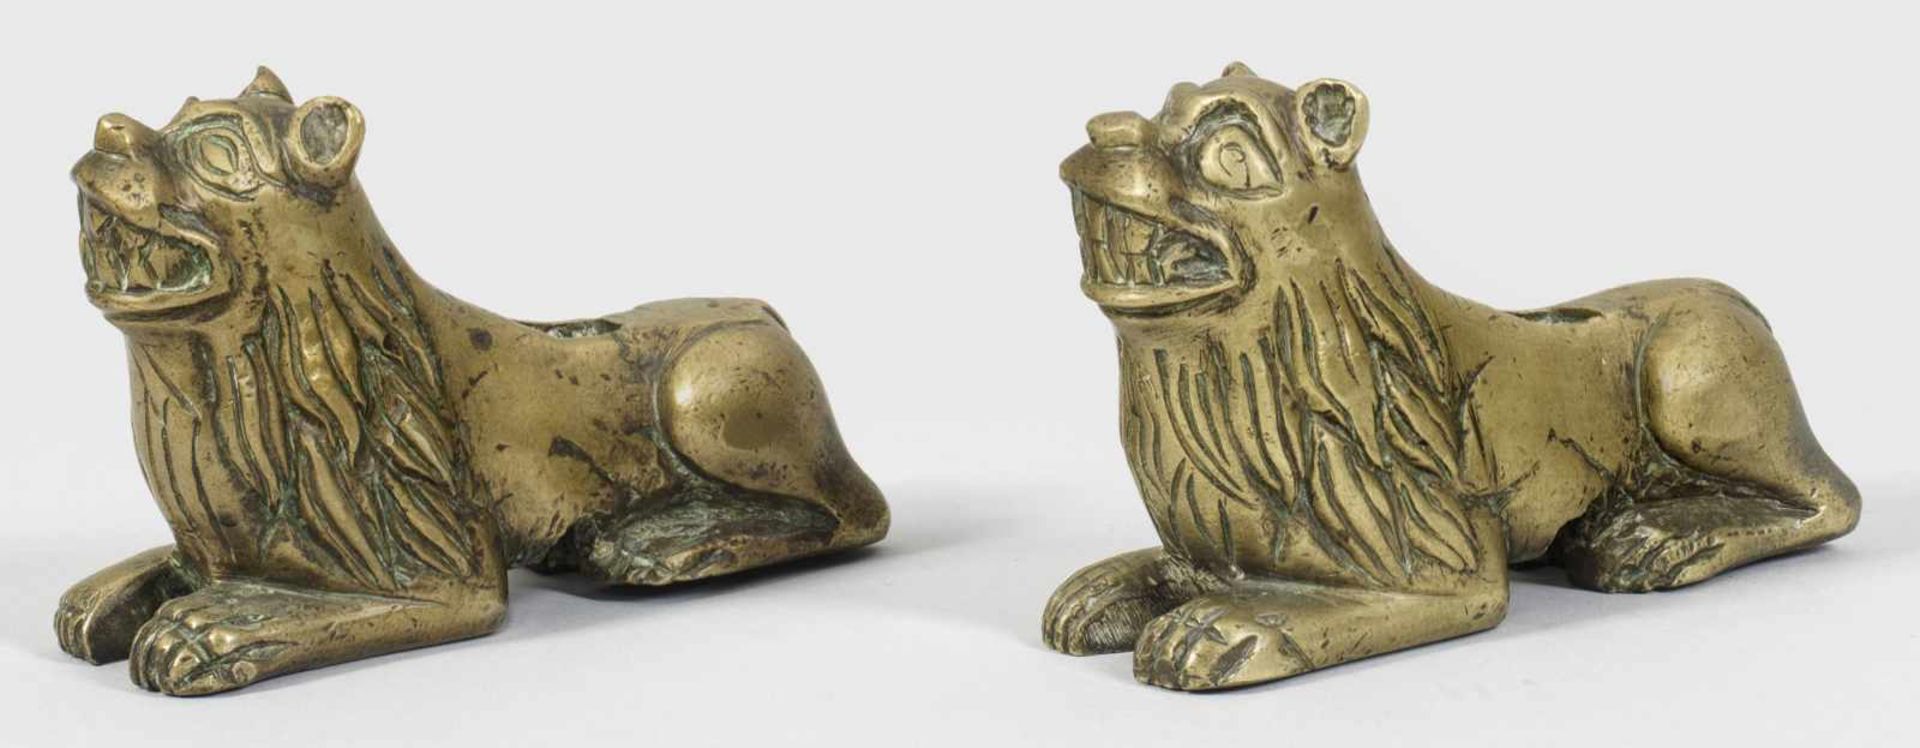 Paar ruhende LöwenGegenstücke. Bronze. Vollplastisch gestaltete liegende Löwen mit erhobenem Kopf.